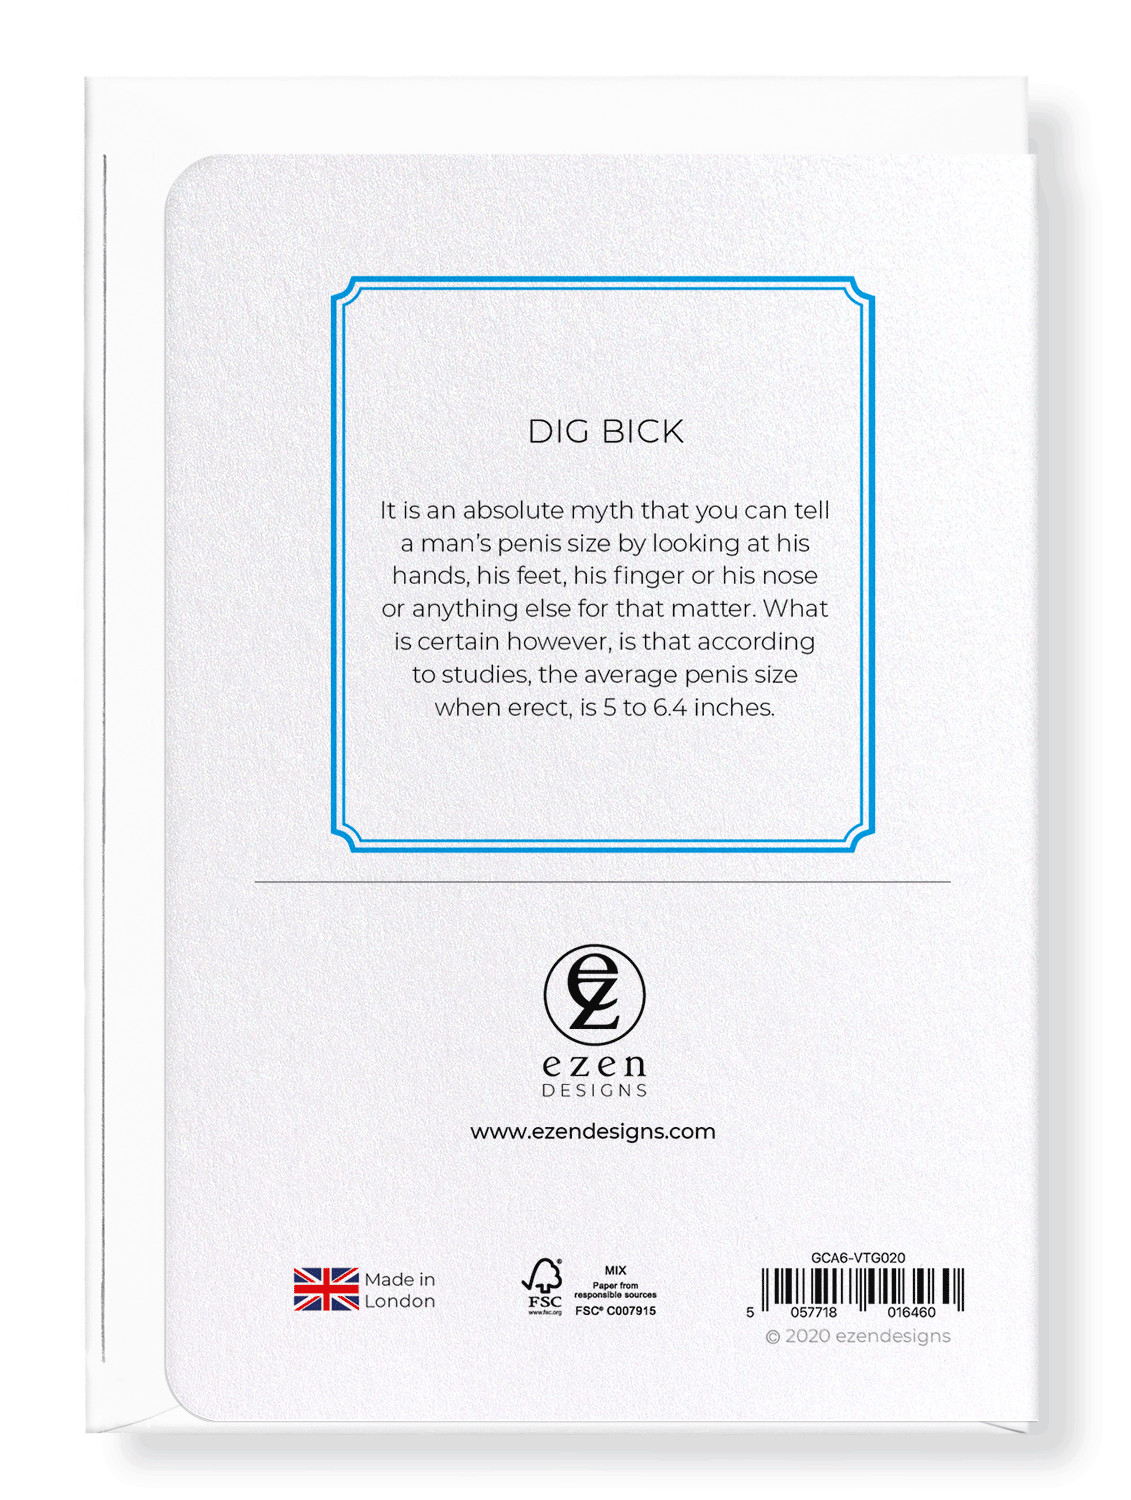 Ezen Designs - Dig bick - Greeting Card - Back